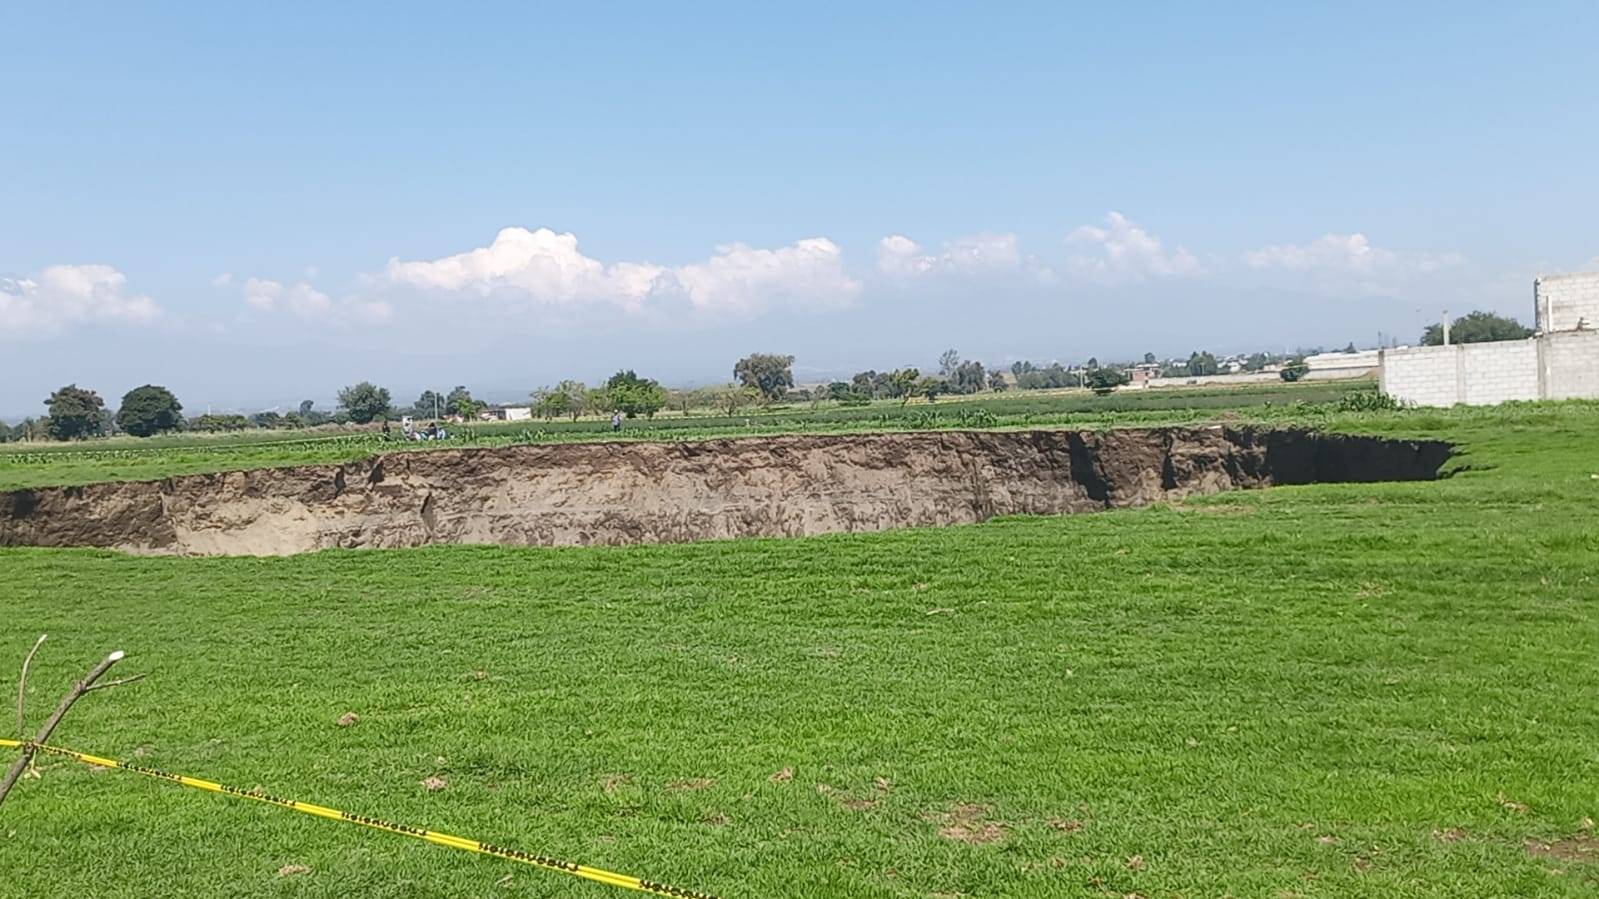 El socavón que se creó en tierras de cultivo en Santa María Zacatepec, Puebla tiene una profundidad de 10 metros y 60 metros de extensión.